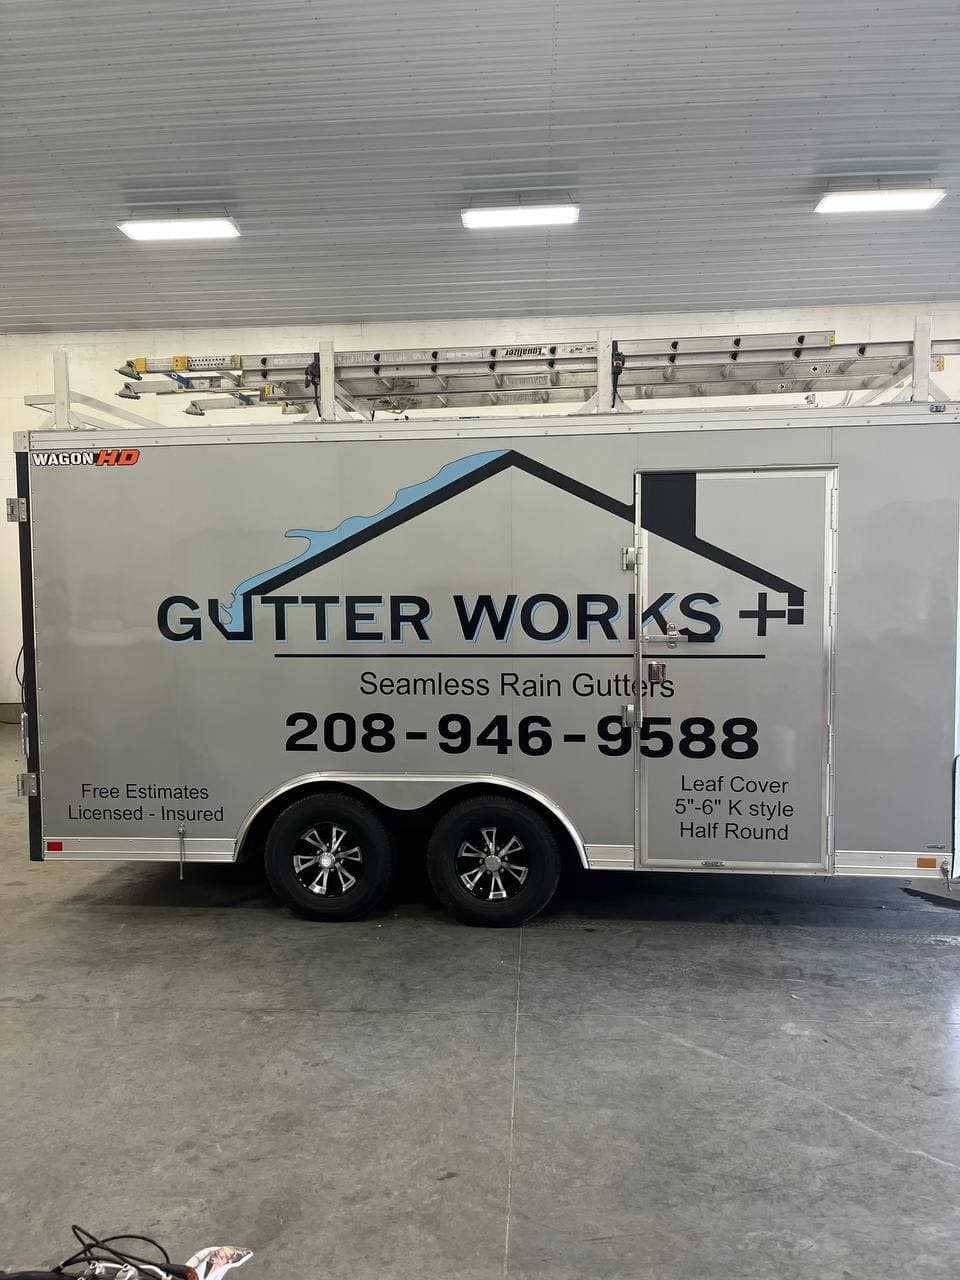 Gutter Works+ 7111 Funkhouser St, Bonners Ferry Idaho 83805